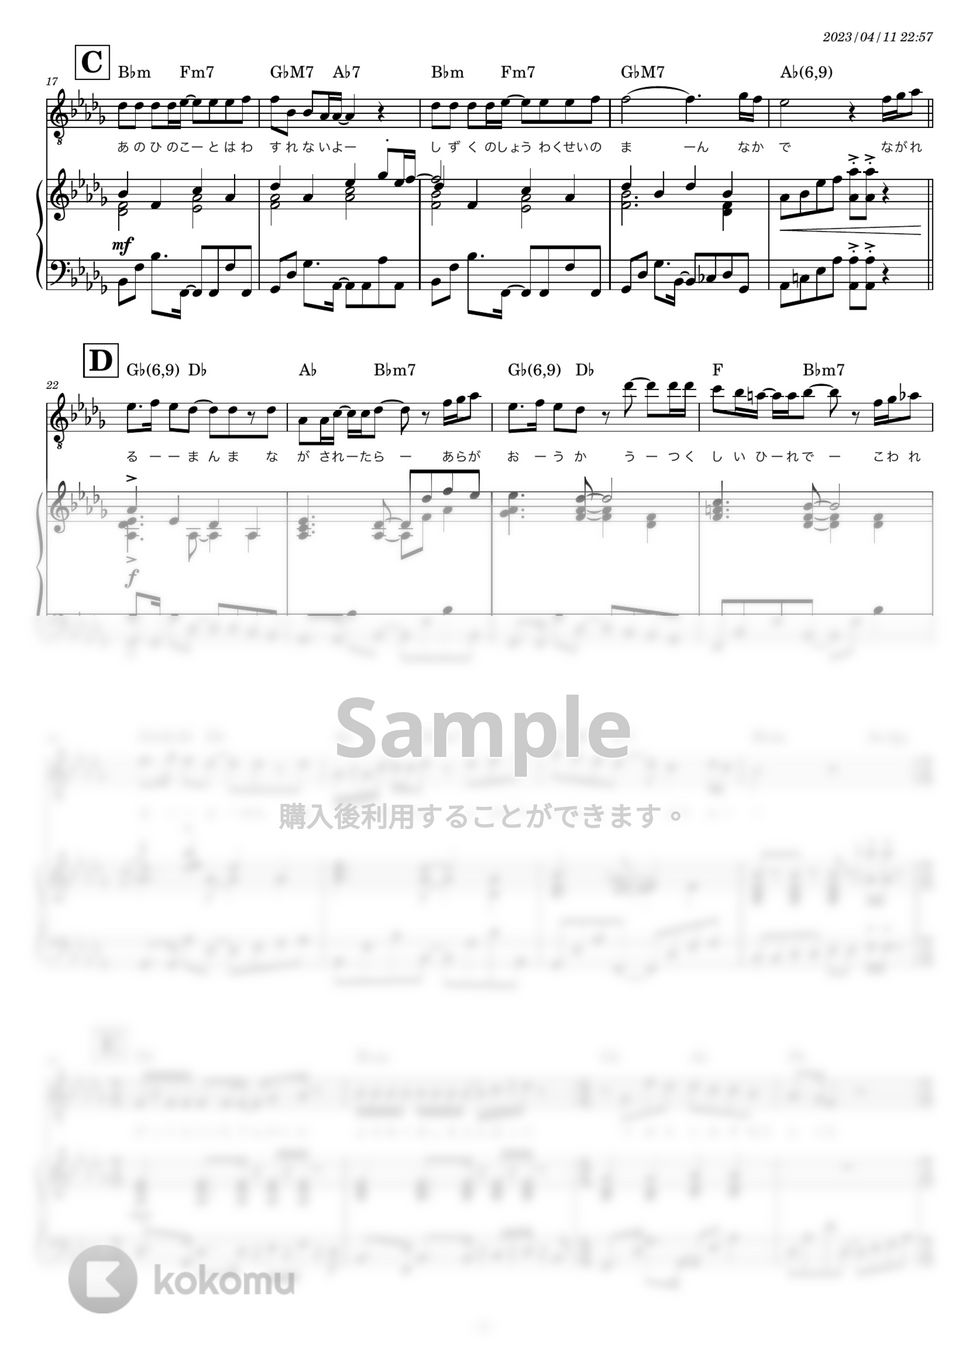 スピッツ - 美しい鰭 (ピアノ伴奏) by 糸川瑞樹